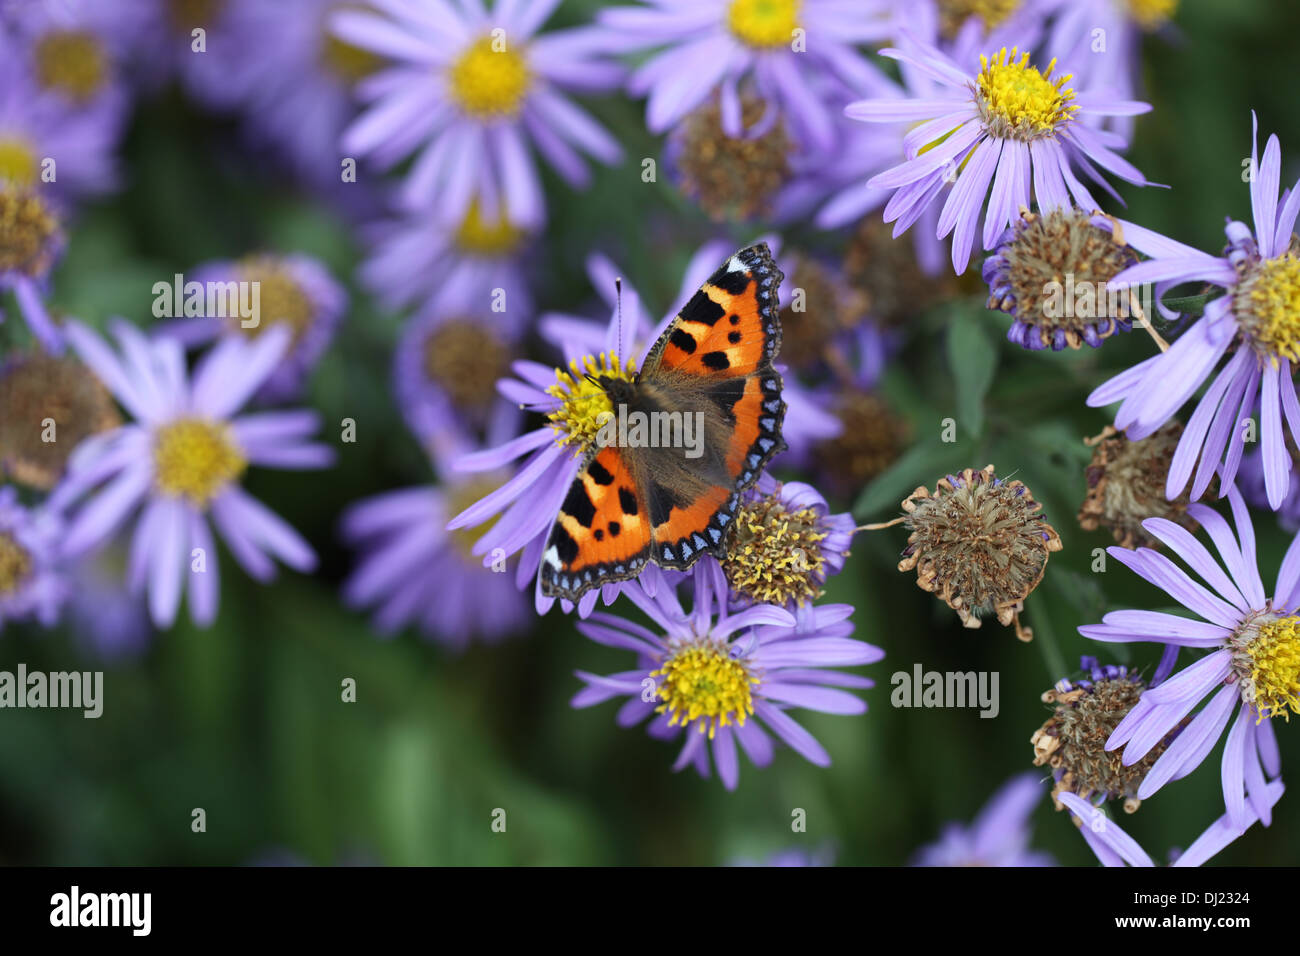 A tortoiseshell Butterfly on Michaelmas Daisies Stock Photo